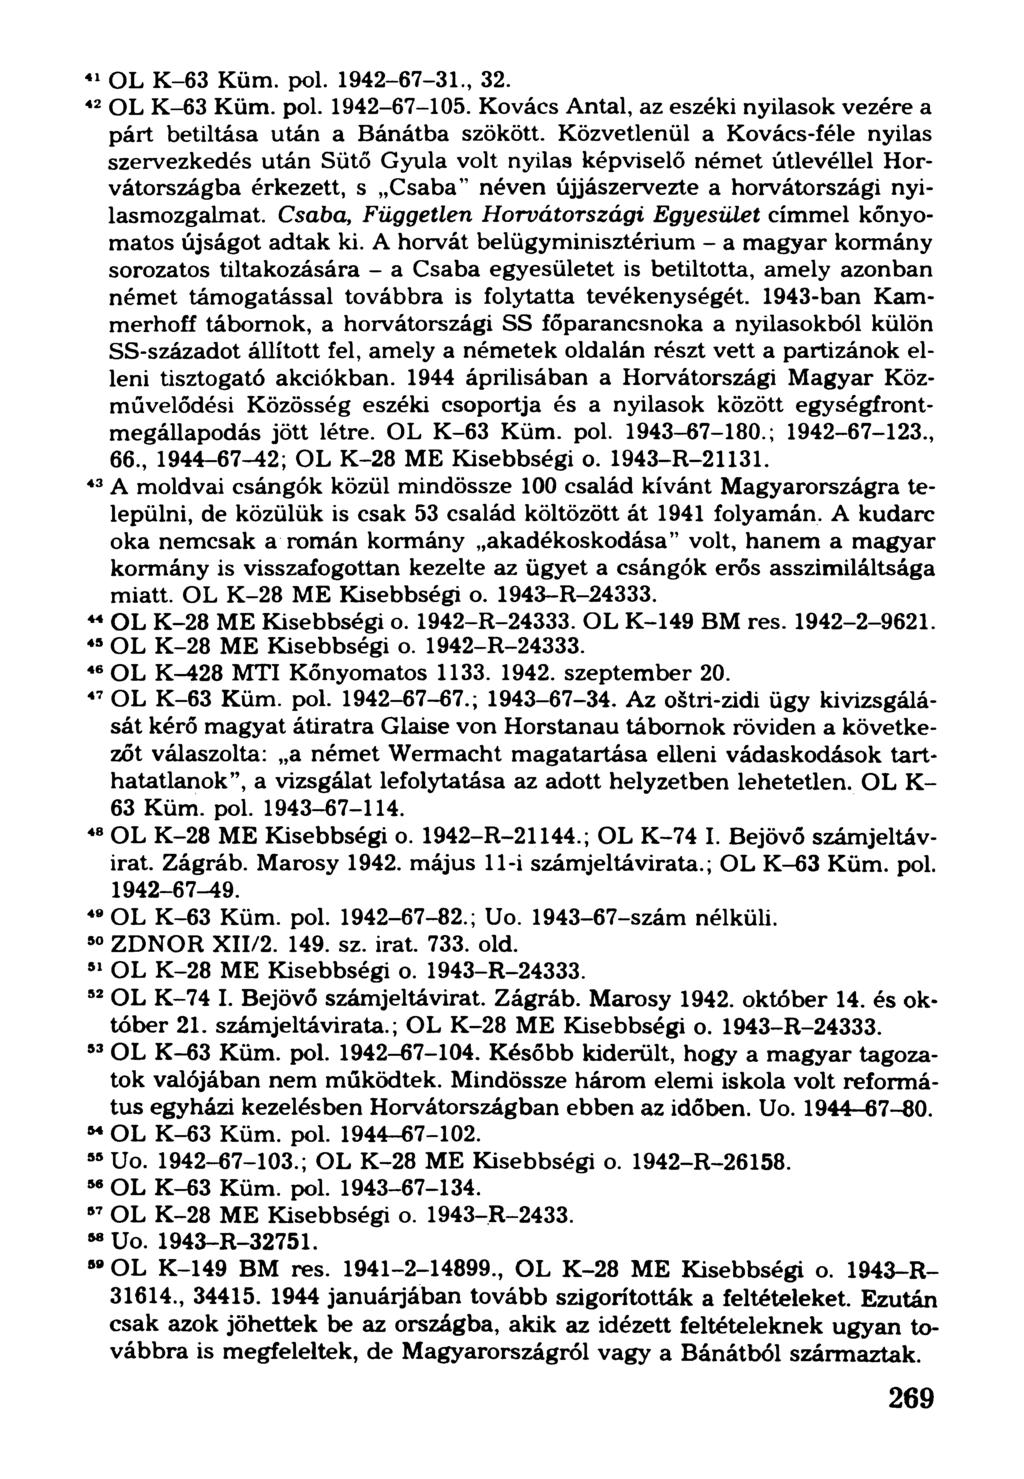 41OL K-63 Küm. pol. 1942-67-31., 32. 42OL K-63 Küm. pol. 1942-67-105. Kovács Antal, az eszéki nyilasok vezére a párt betiltása után a Bánátba szökött.